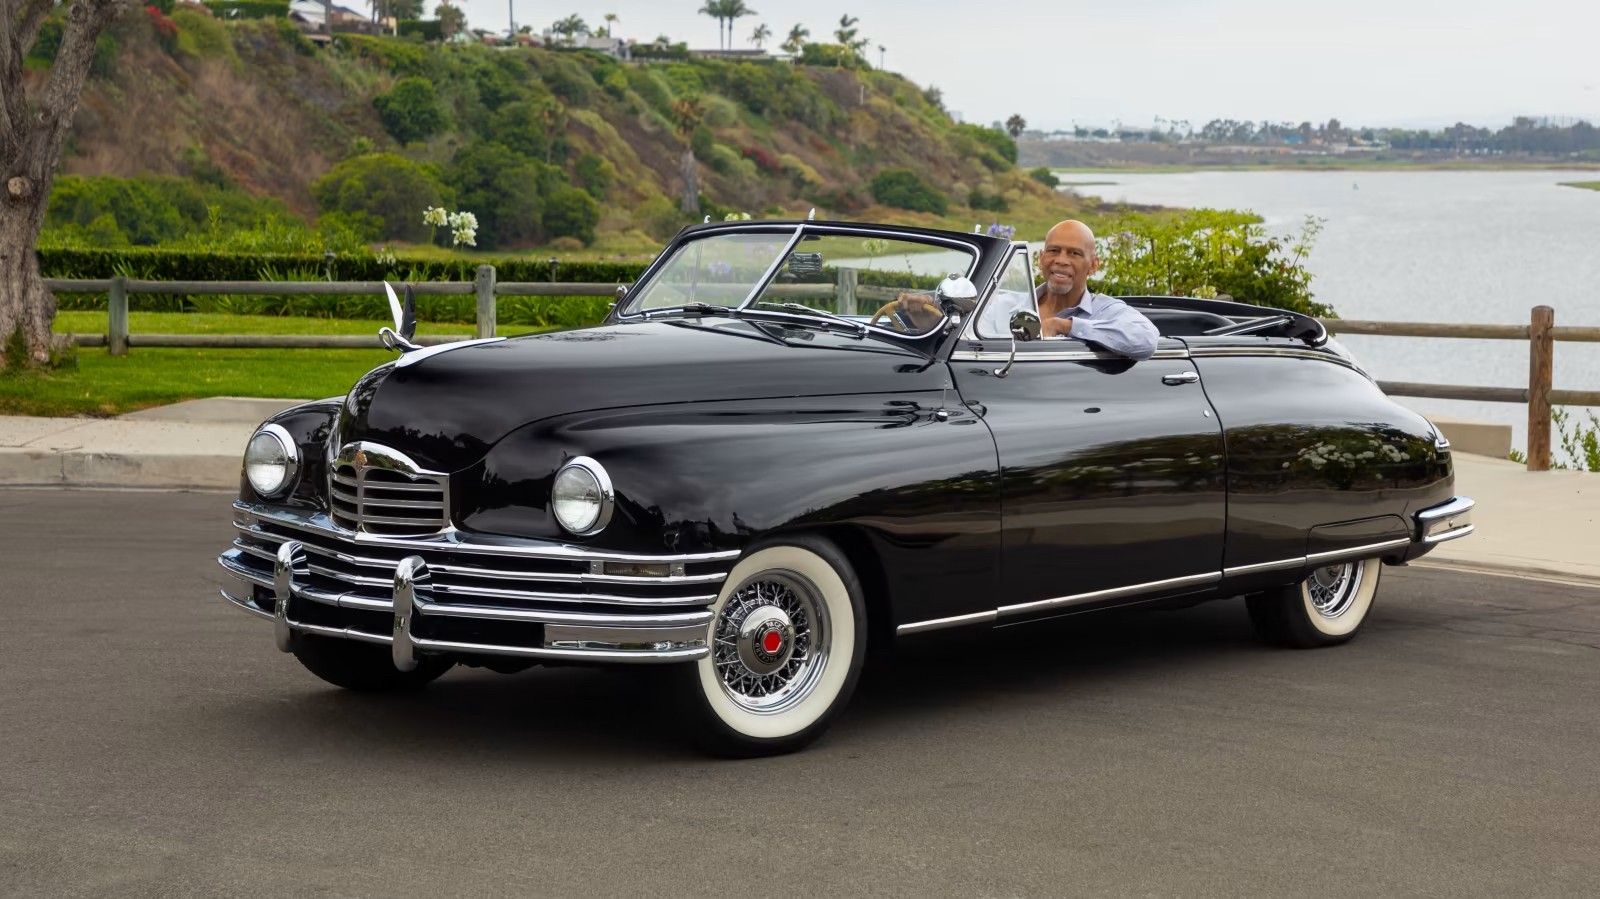 NBA Legend Kareem Abdul-Jabbar's 1948 Packard Super 8 Convertible Victoria Heads to Monterey